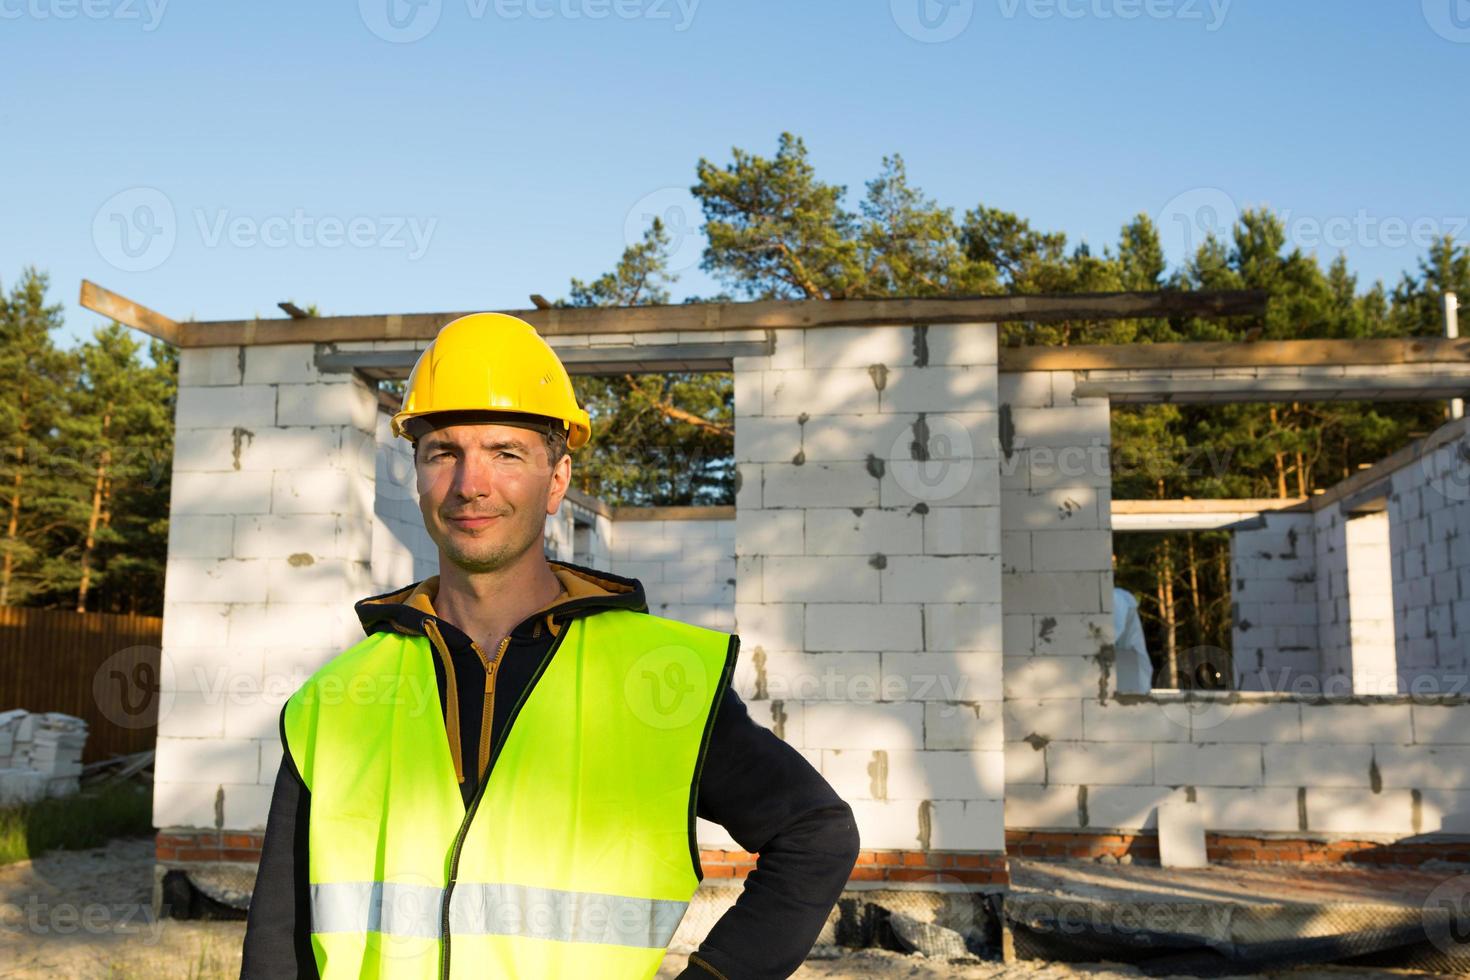 Bauarbeiter spricht auf einem Smartphone in einem gelben Hardhat und einer  reflektierenden Weste vor dem Hintergrund des Hausbaus - die Wände und  Fensteröffnungen bestehen aus porösen Betonblöcken. 8005302 Stock-Photo bei  Vecteezy